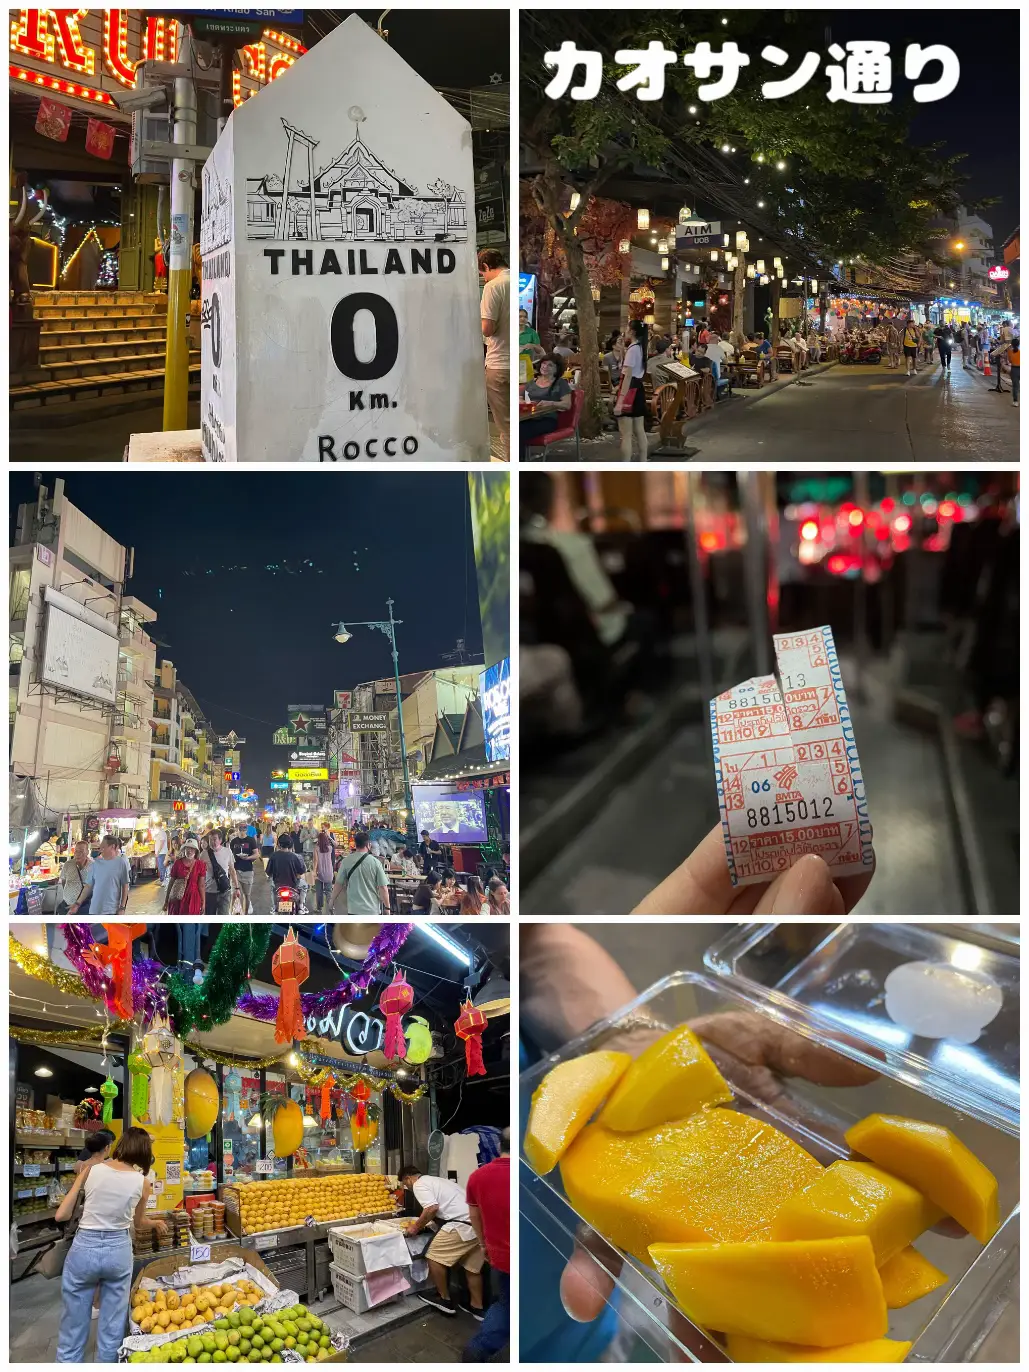 【タイ旅行6日目】神聖な観光スポットとバンコクの夜を満喫❤︎の画像 (8枚目)